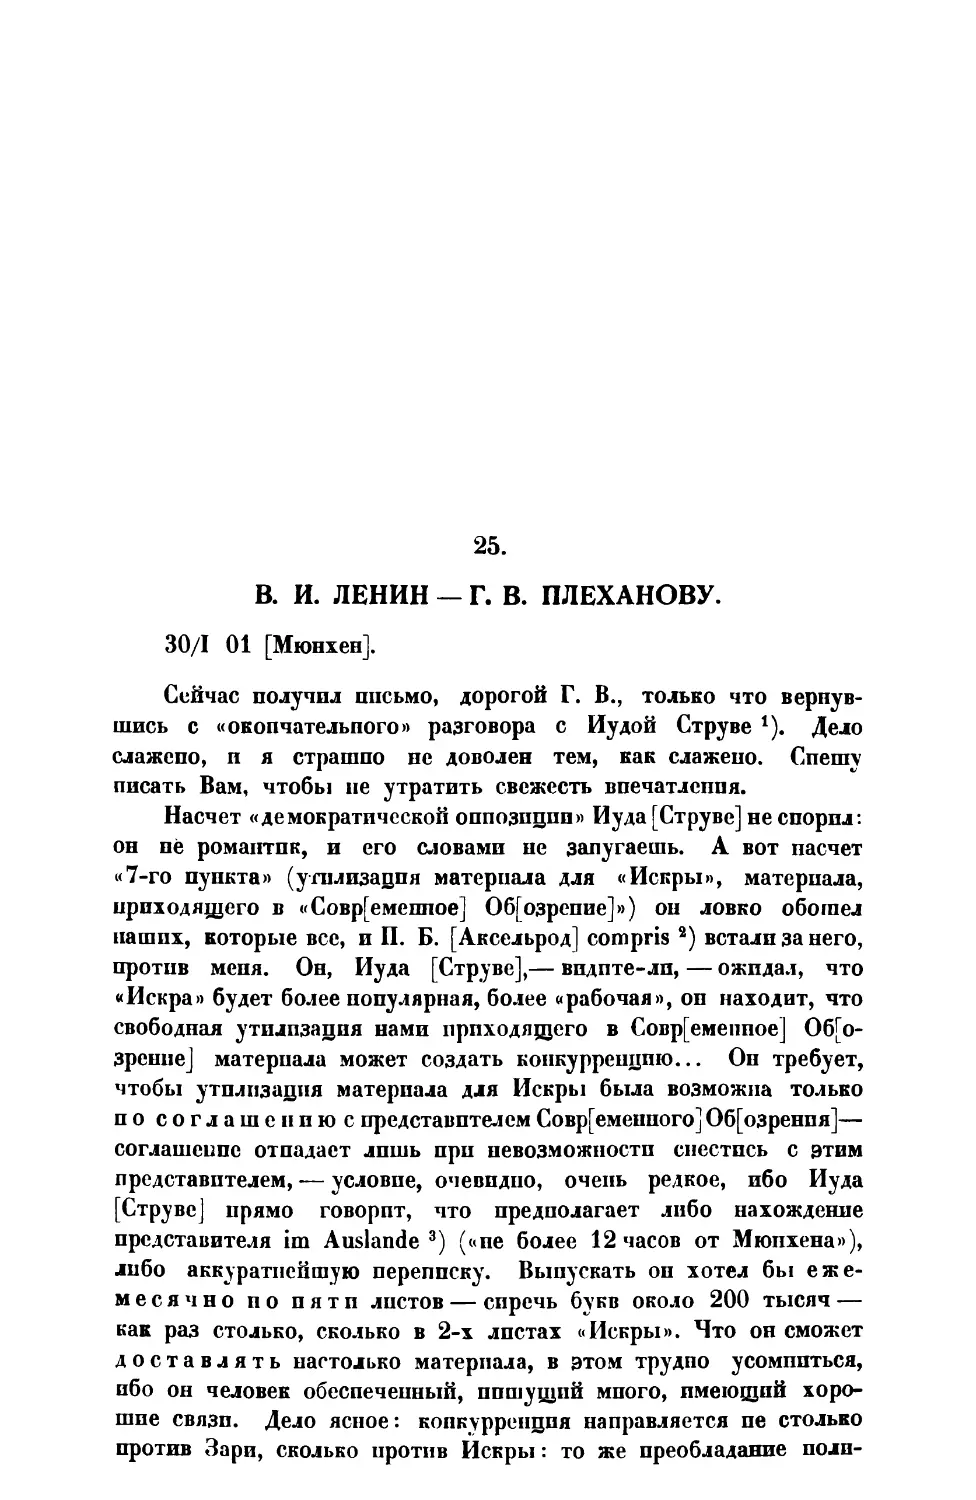 25. В. И. Ленин. — Письмо Г. В. Плеханову от 30 I 1901 г.